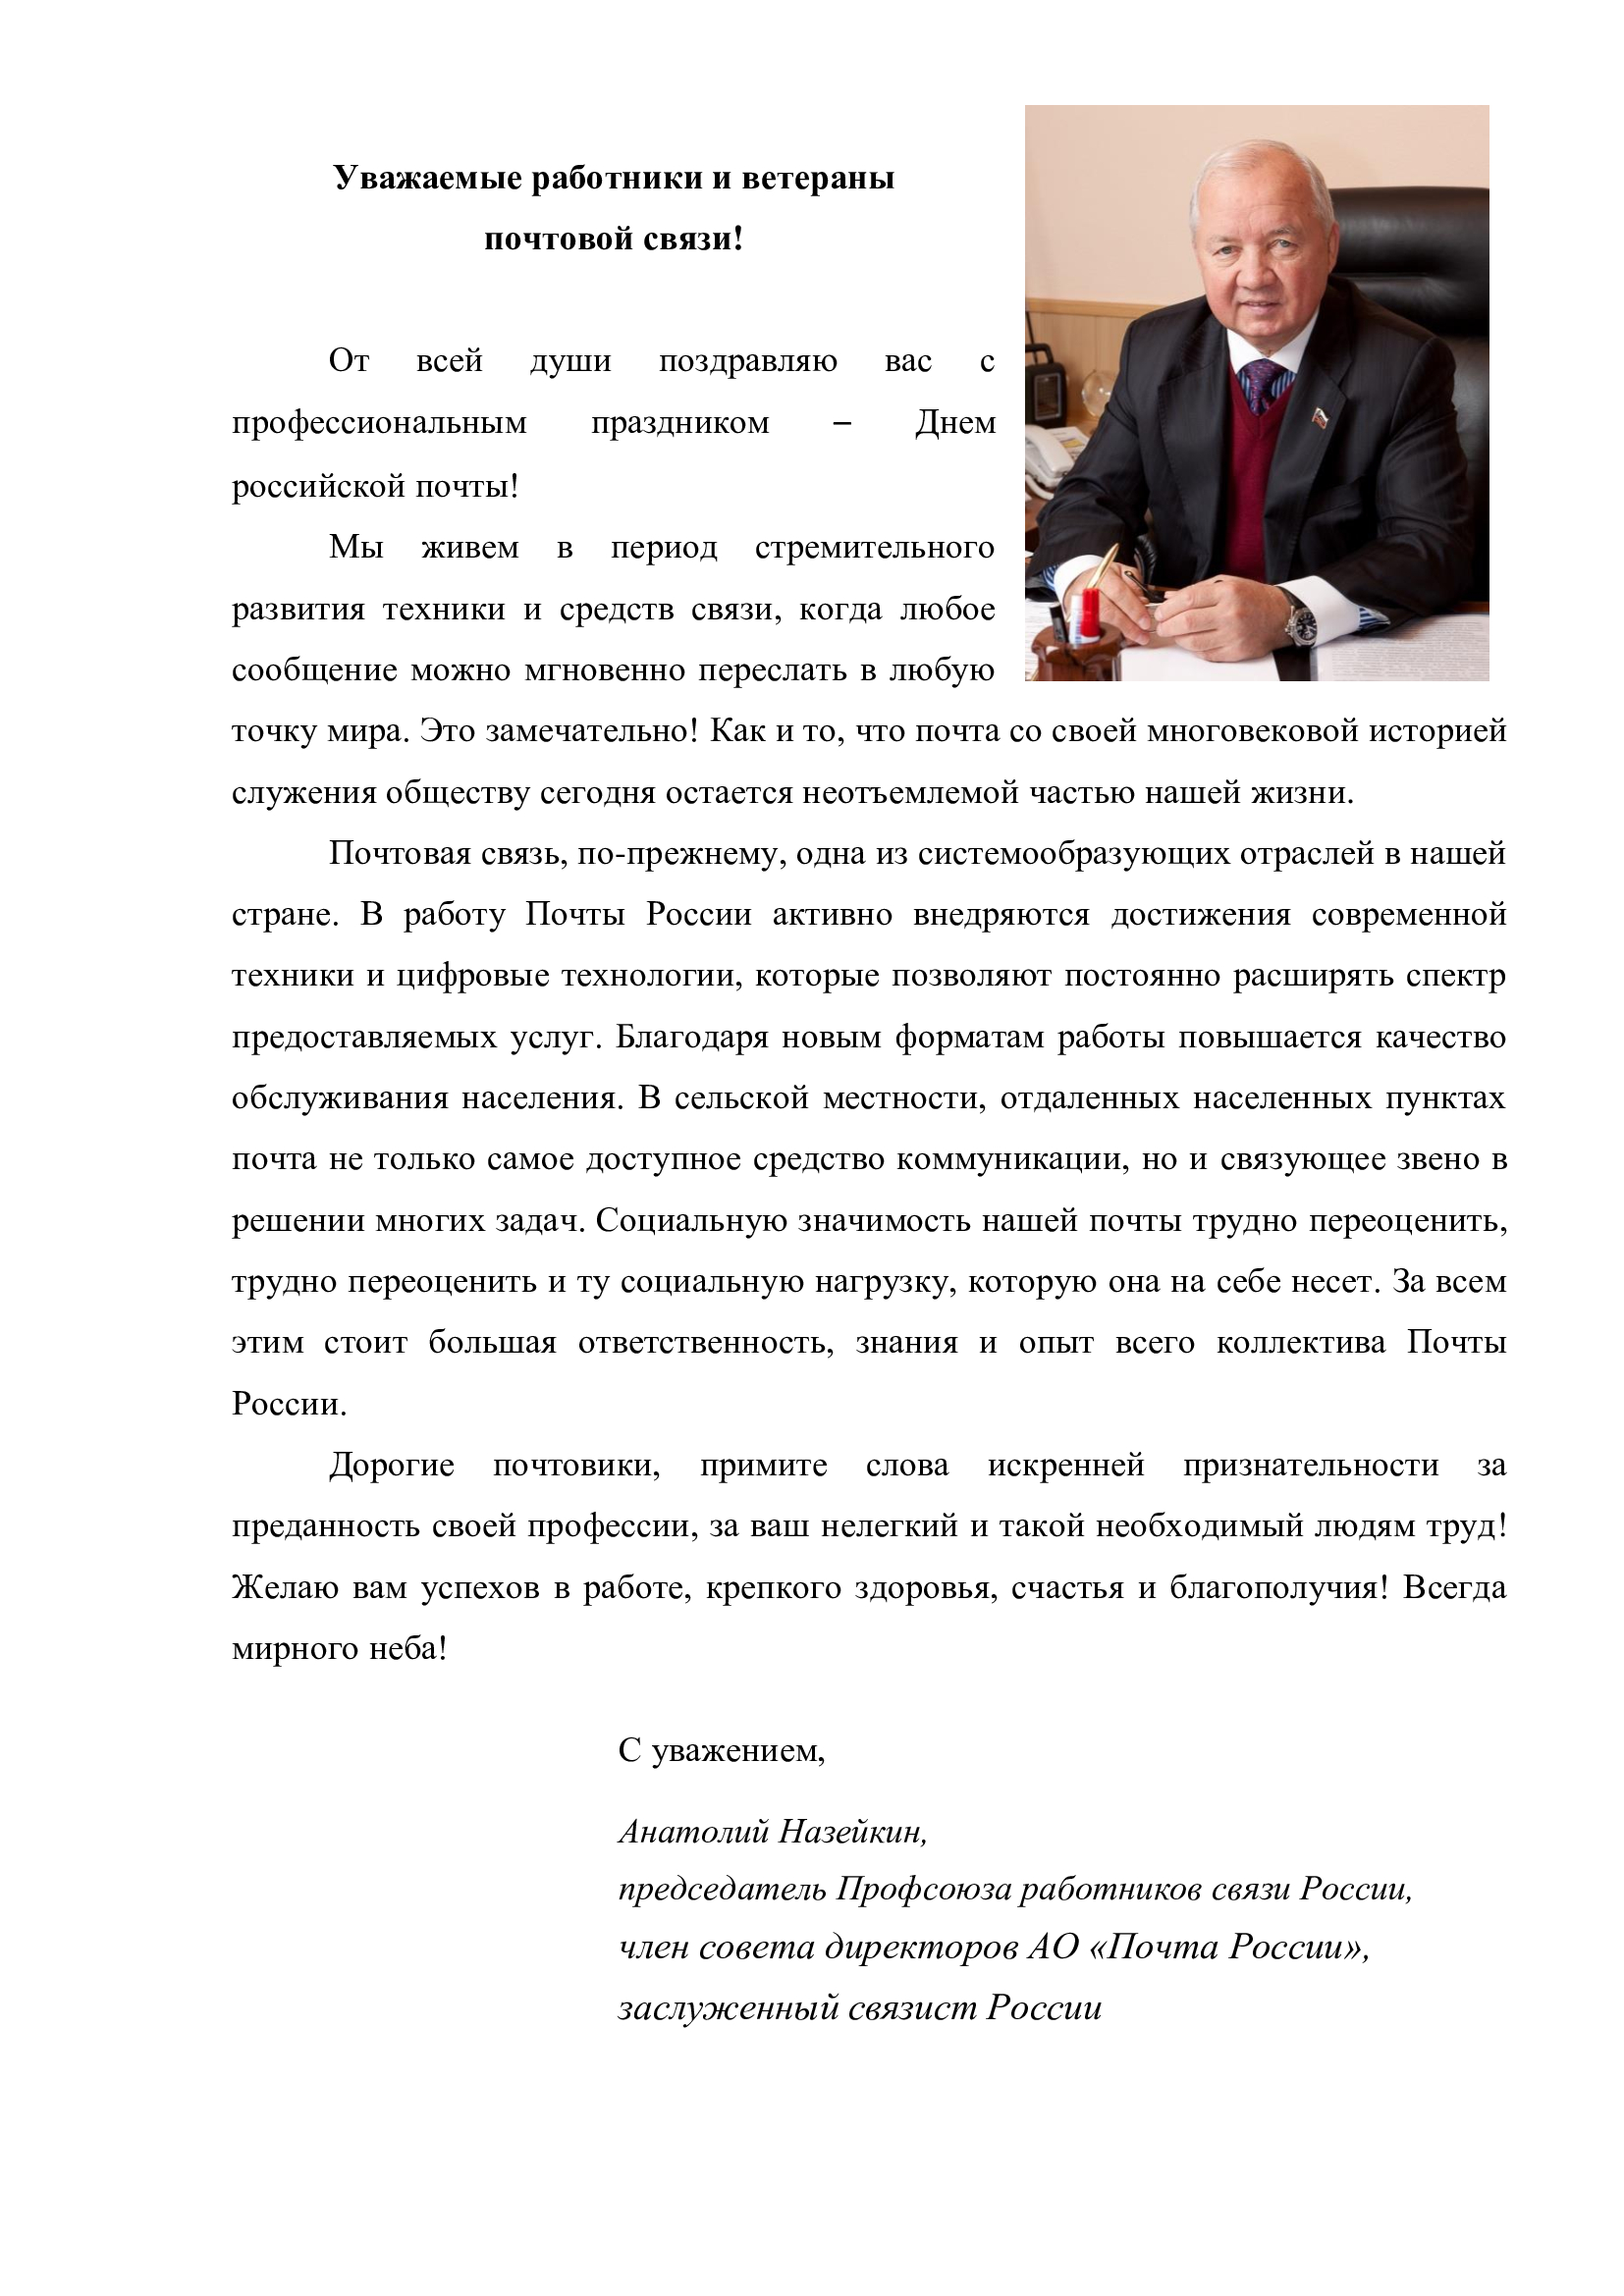 Поздравление председателя Профсоюза А.Г.Назейкина с Днем российской почты